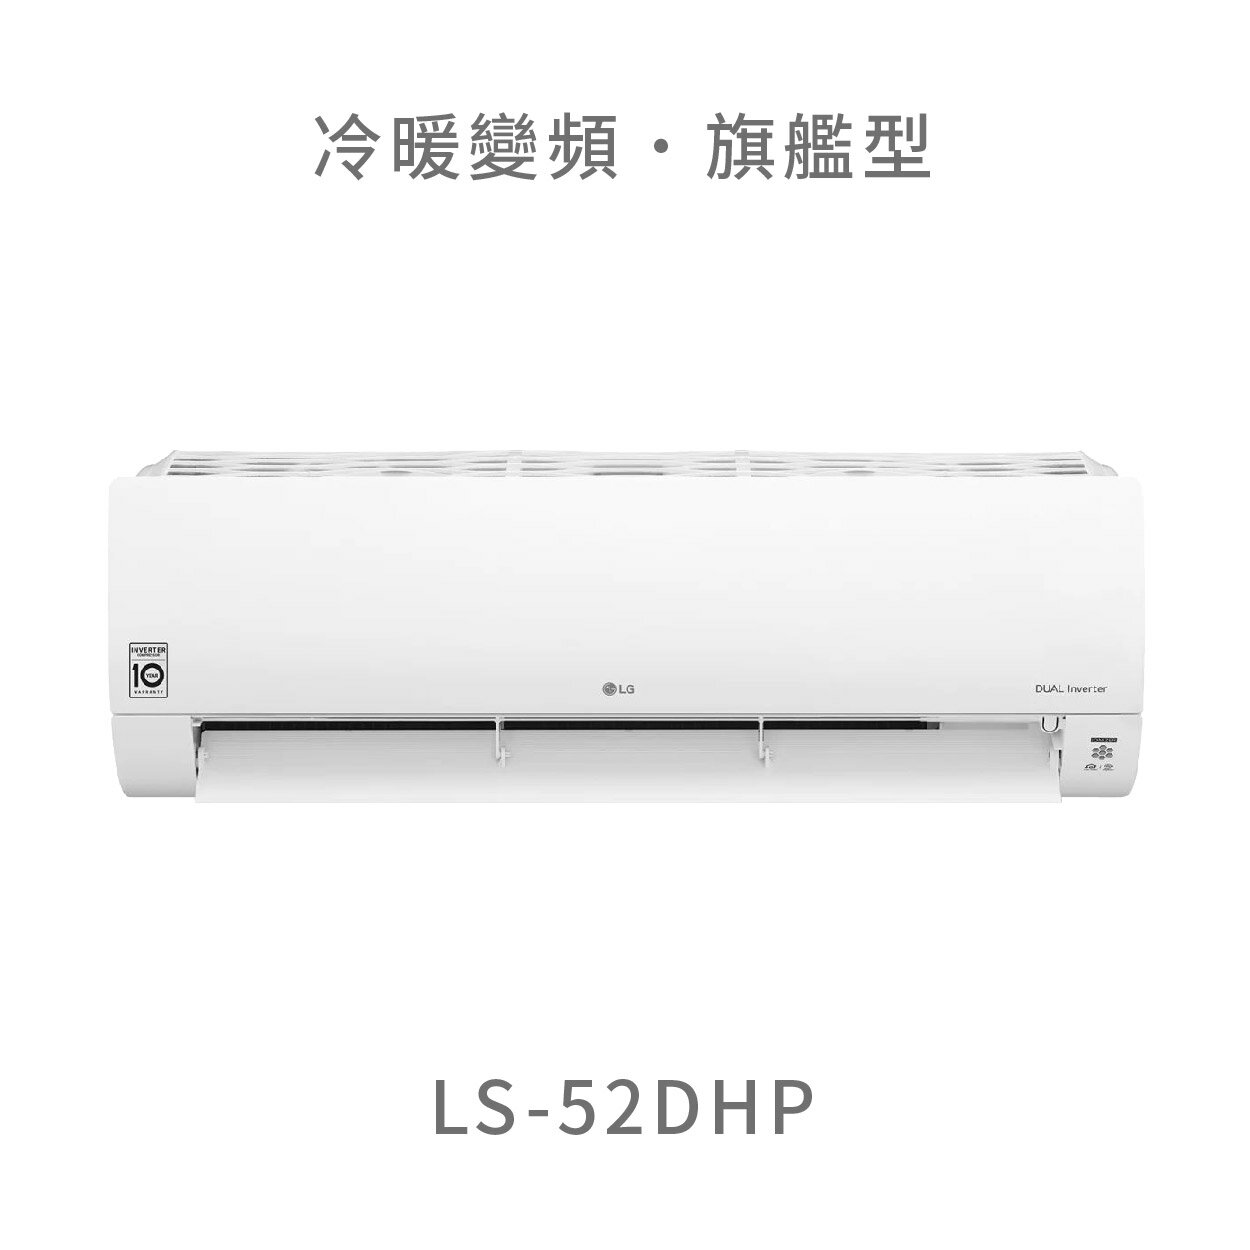 【點數10%回饋】【標準安裝費用另計】LG LS-52DHP 5.2kw WiFi雙迴轉變頻空調 - 旗艦冷暖型